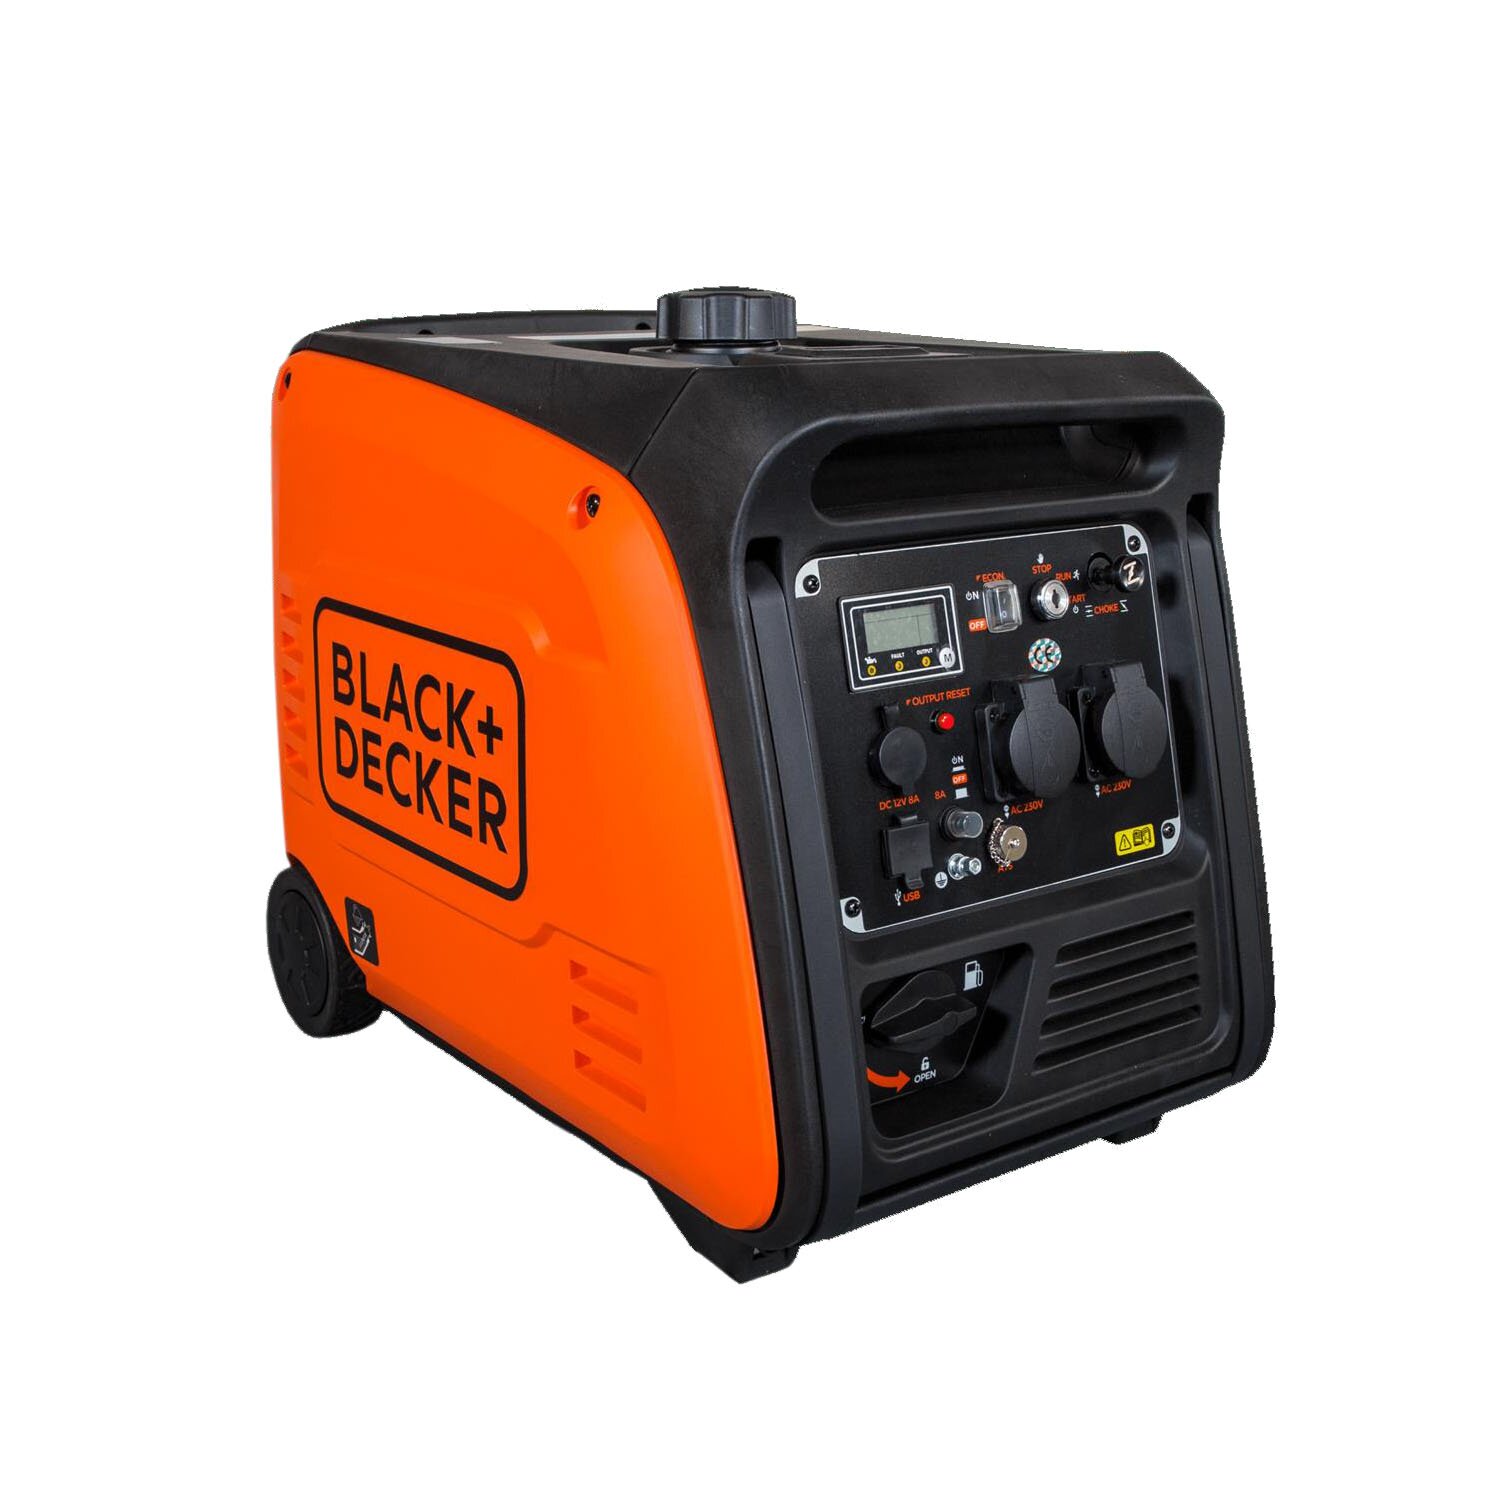 https://www.championpowerequipment.de/media/image/product/28721/lg/bd-bxgni4000e_blackdecker-inverter-power-generator-petrol-3900-watt-230v-e-start-radio-start-ats.jpg